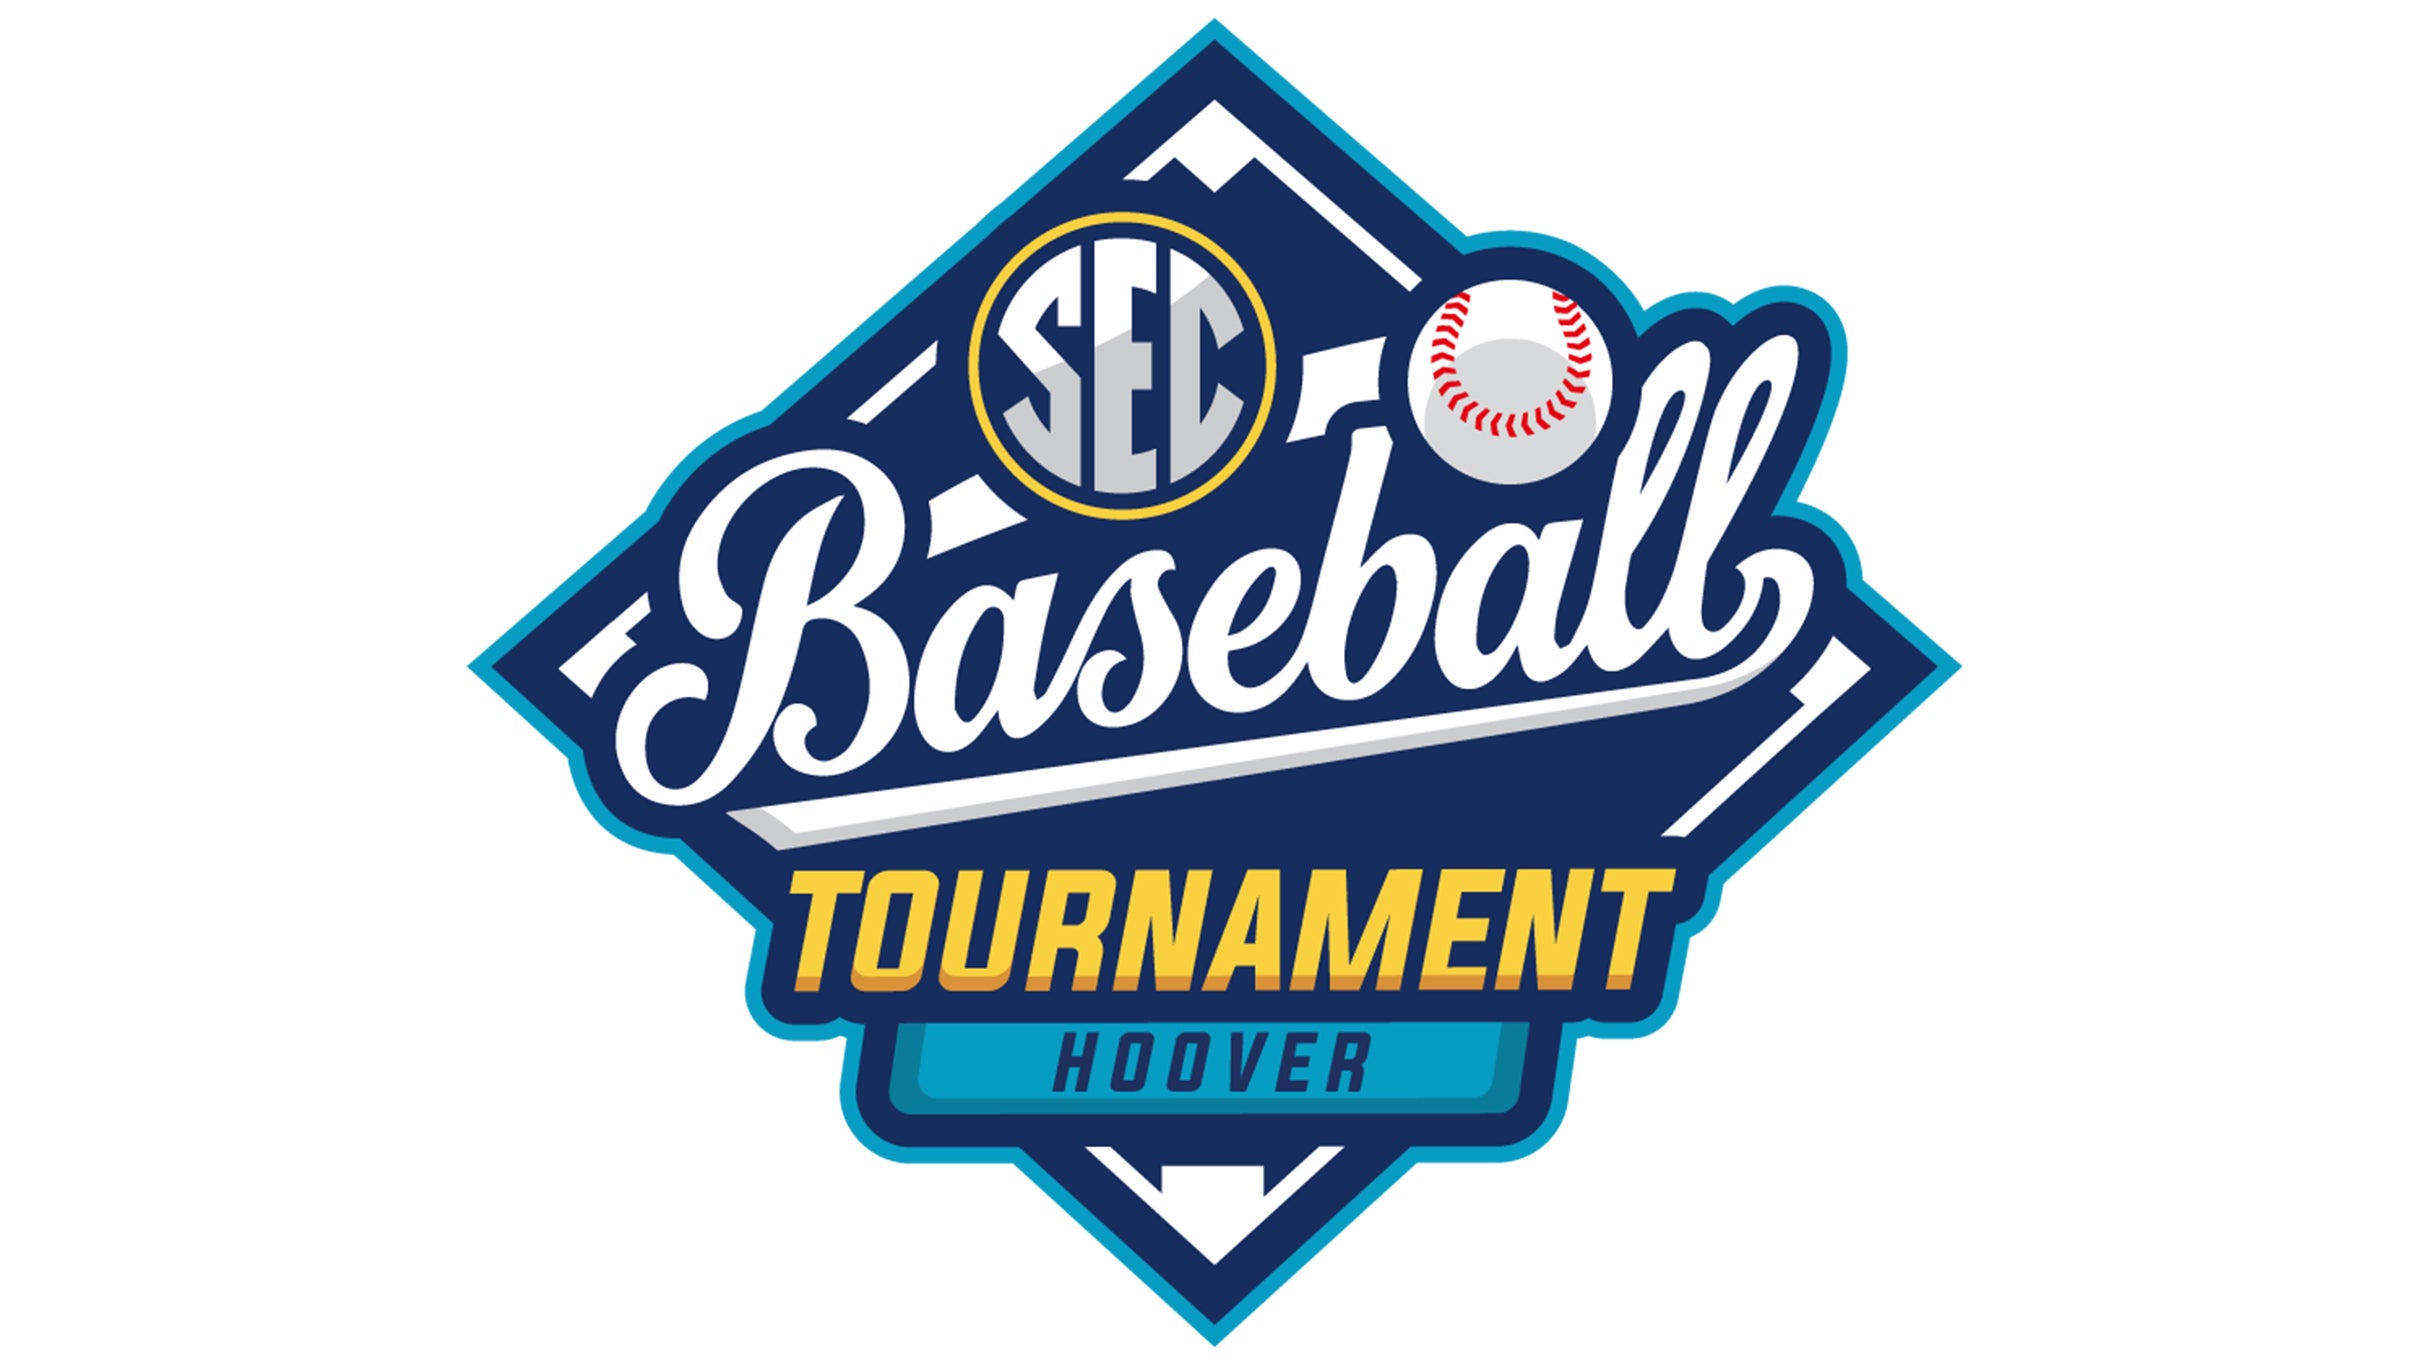 SEC Baseball Tournament-Semifinal Games at Hoover Metropolitan Stadium – Hoover, AL